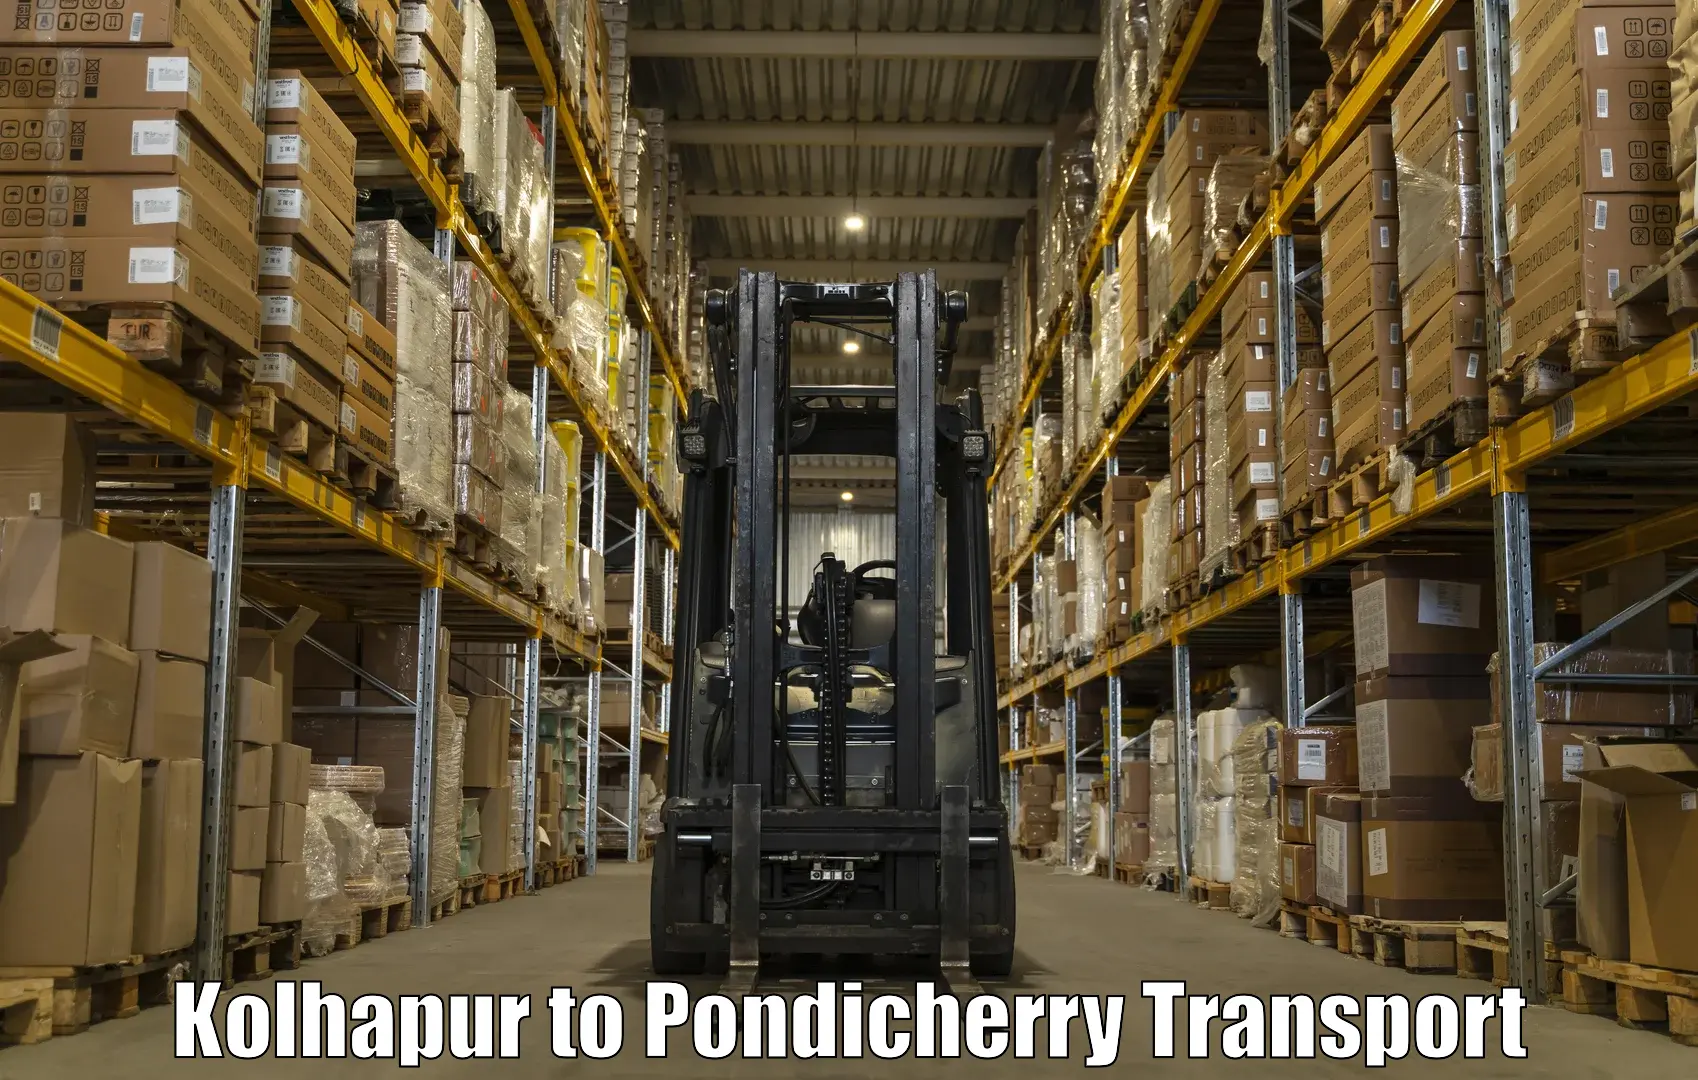 Shipping partner Kolhapur to Pondicherry University